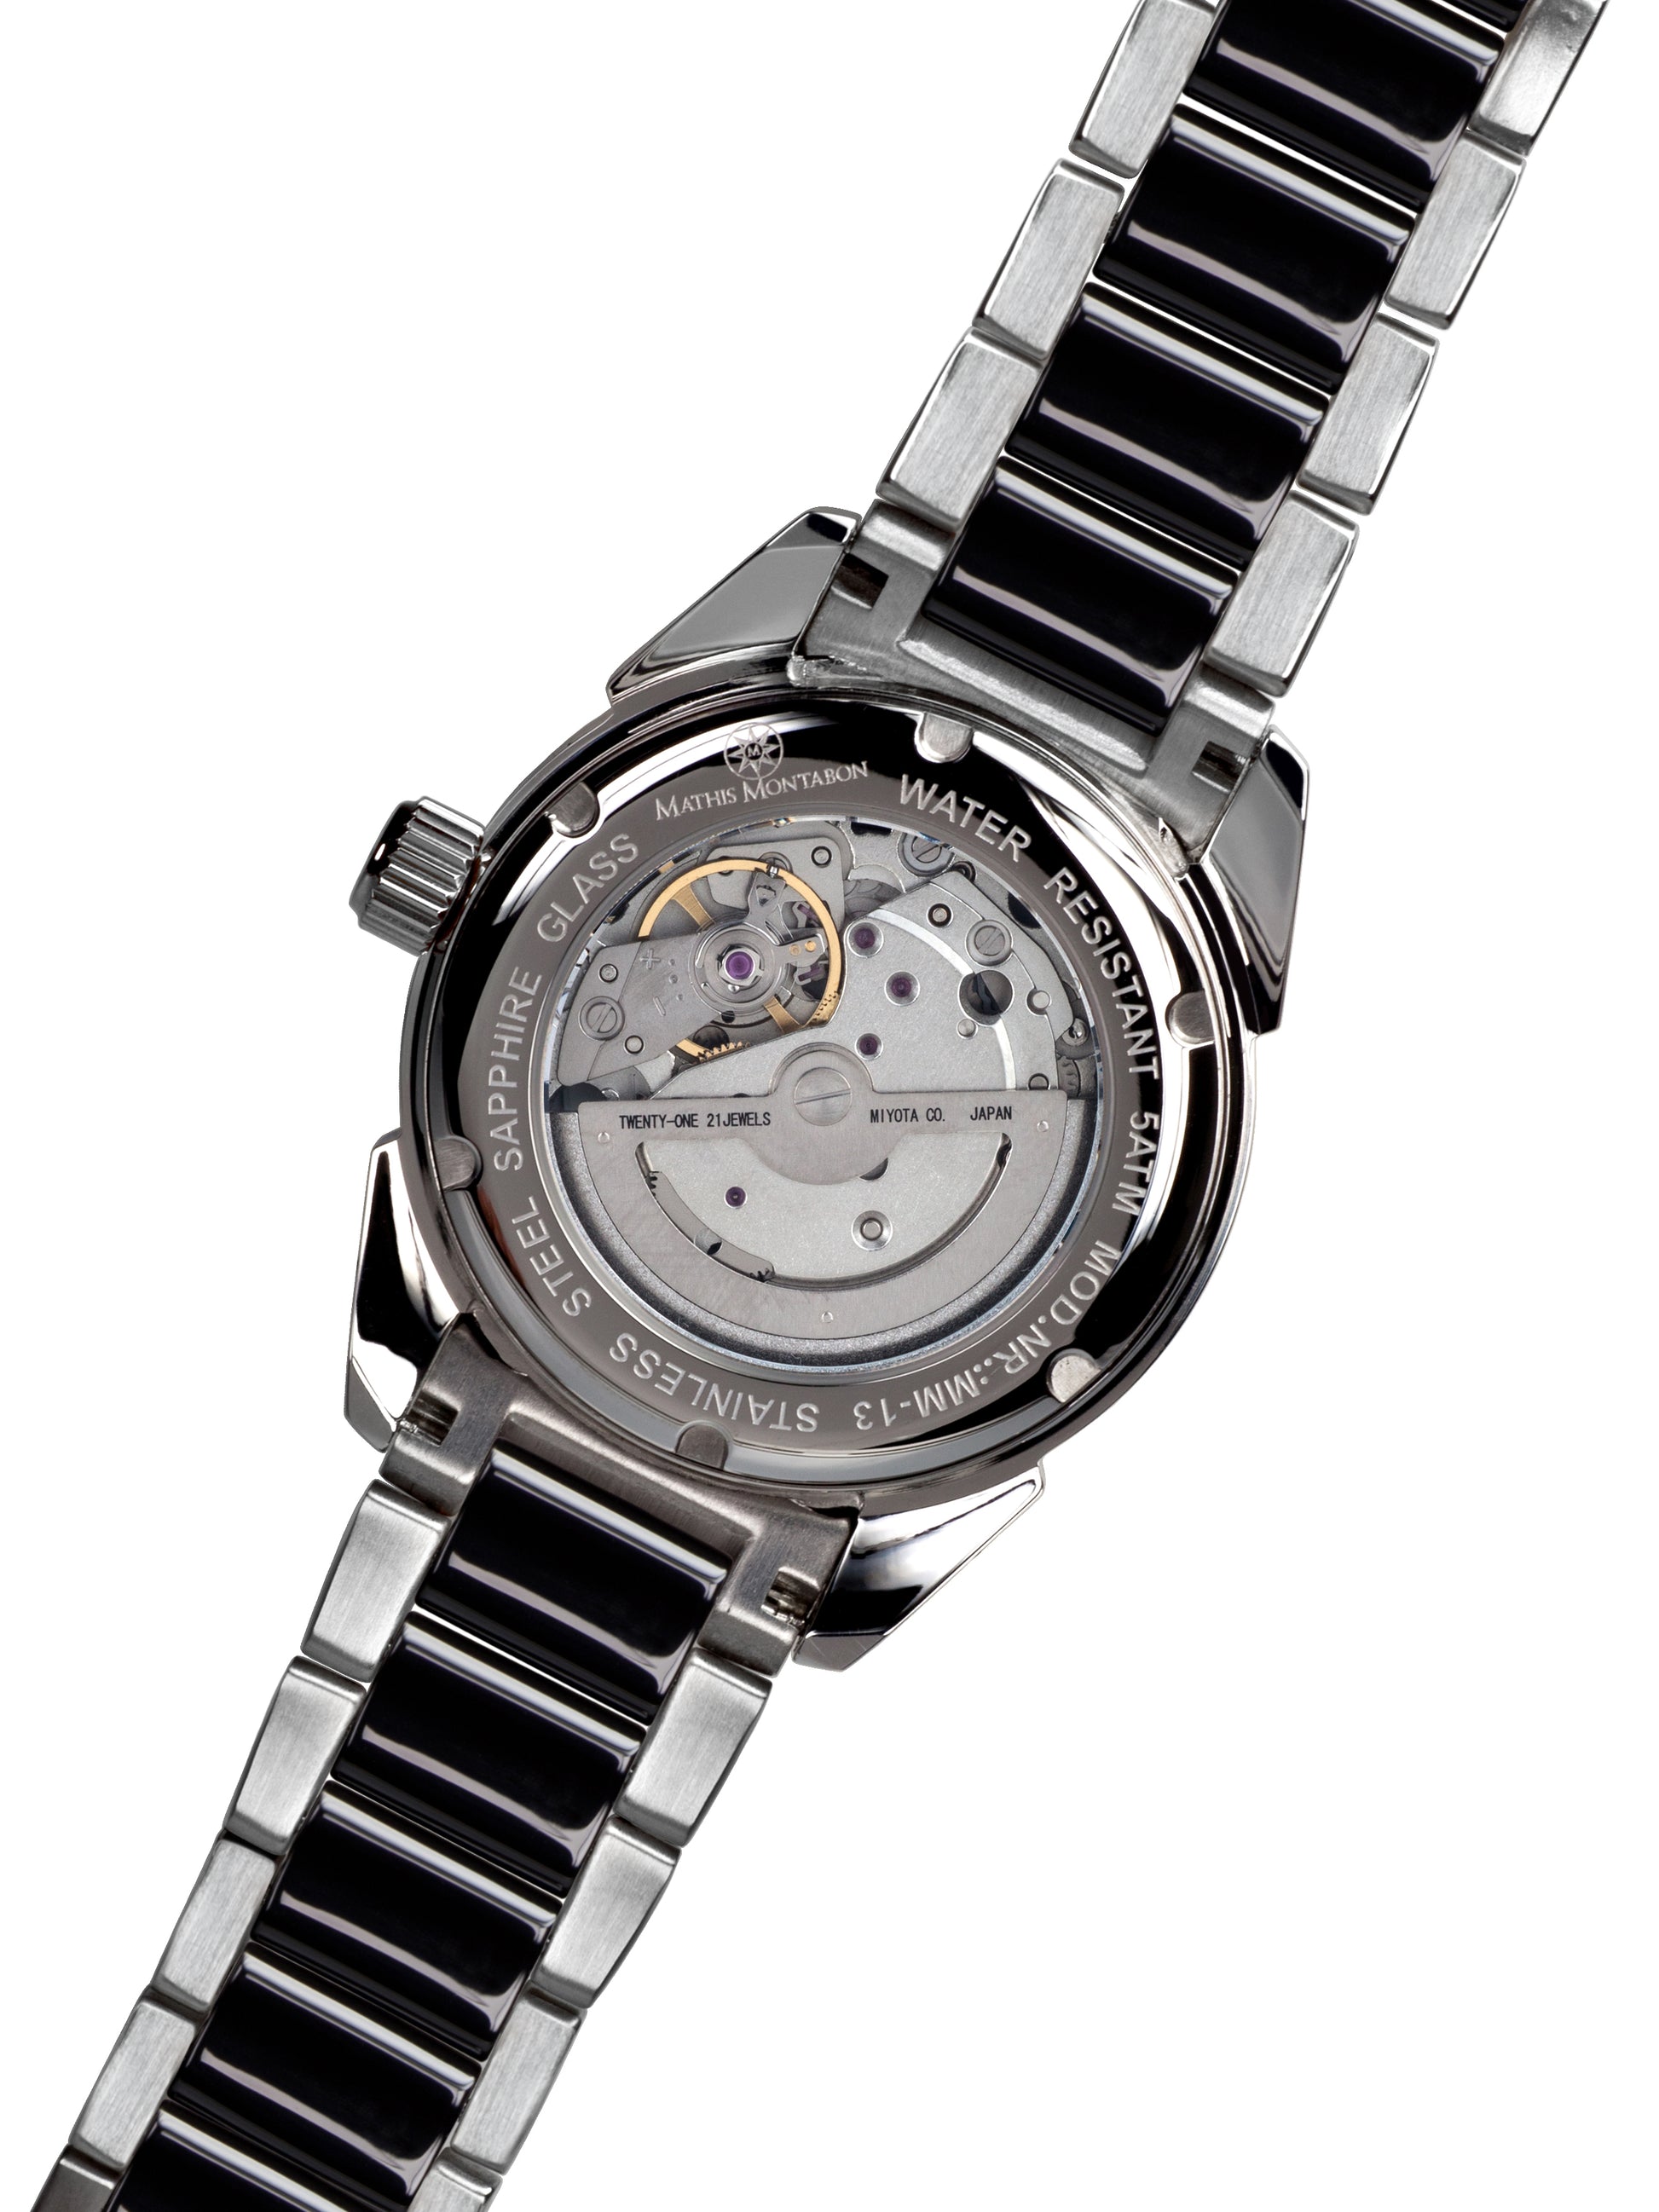 Automatic watches — La Magnifique — Mathis Montabon — schwarz II